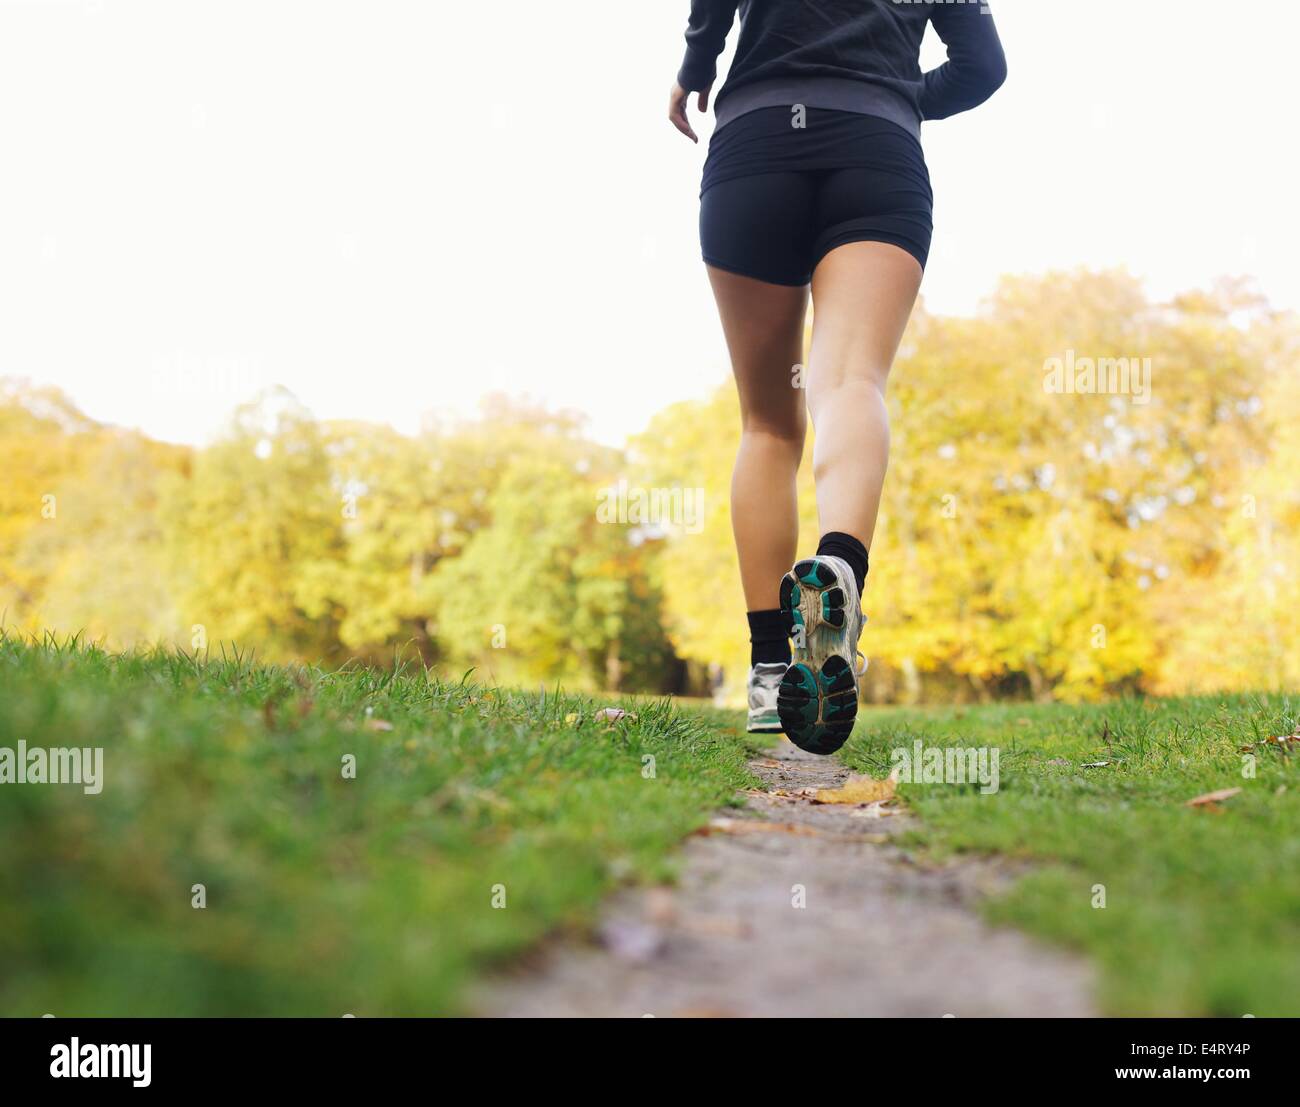 Rückansicht der Sportlerin im Park Joggen. Frauen Fitness-Modell im freien laufen Stockfoto